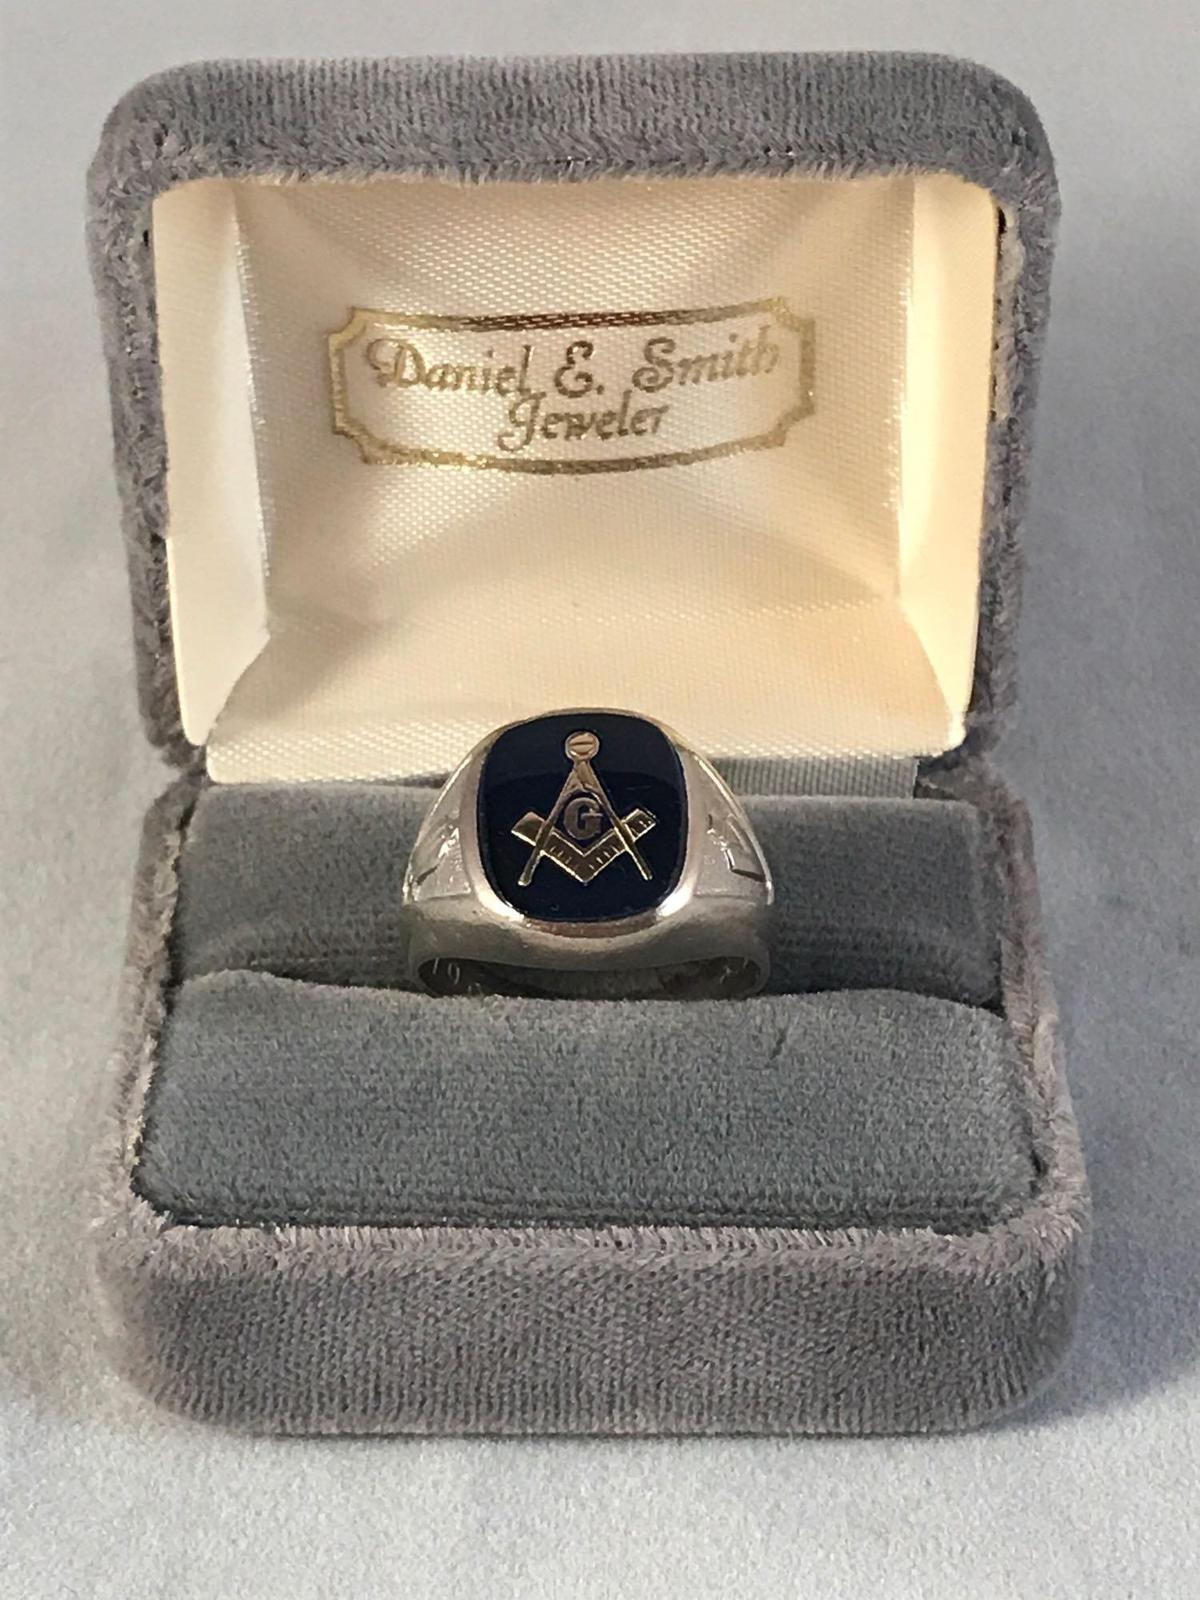 10K Masonic men's ring - dated 4-24-1964 - 3.7DWT